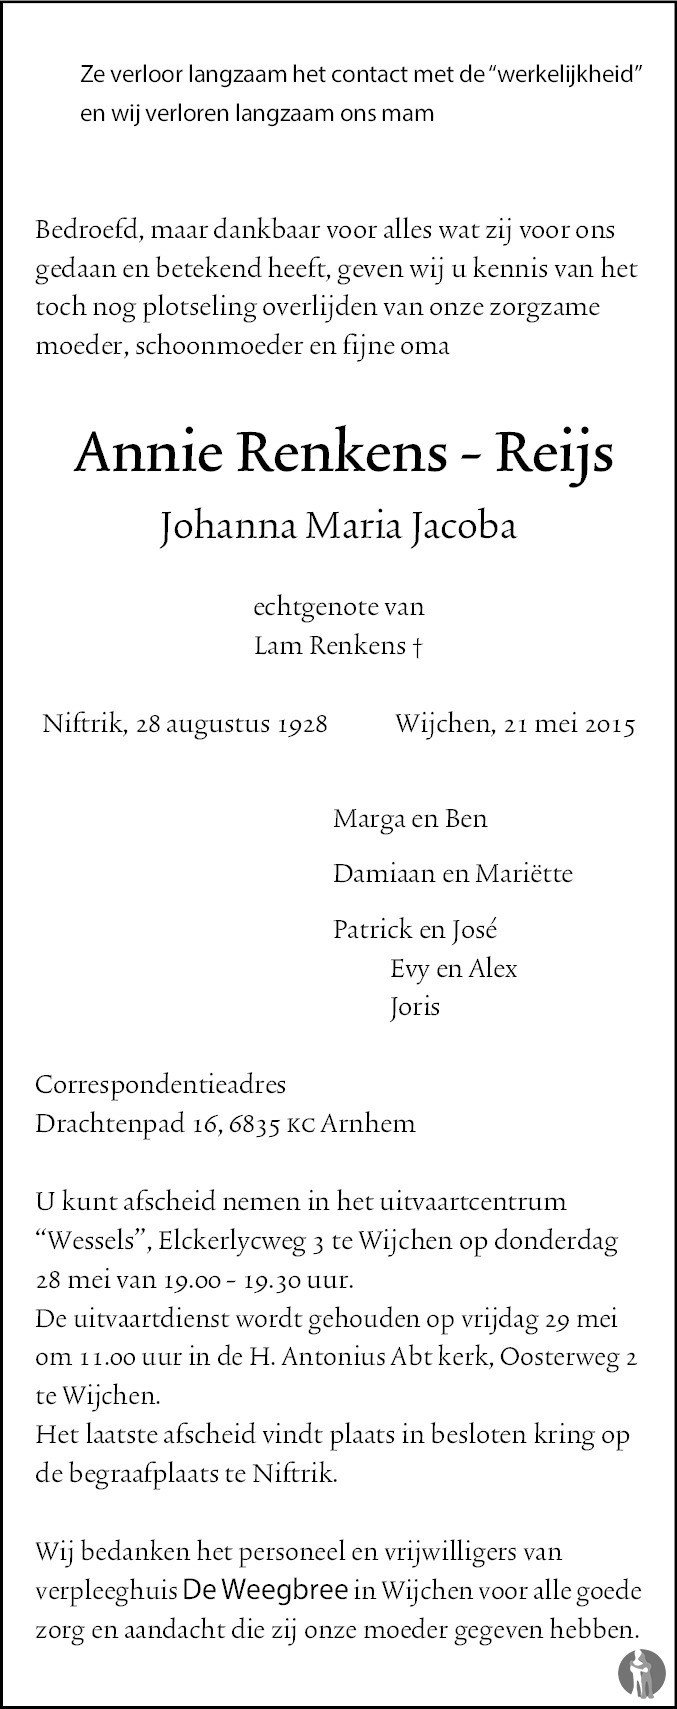 Overlijdensbericht van Johanna Maria Jacoba (Annie) Renkens - Reijs in de Gelderlander